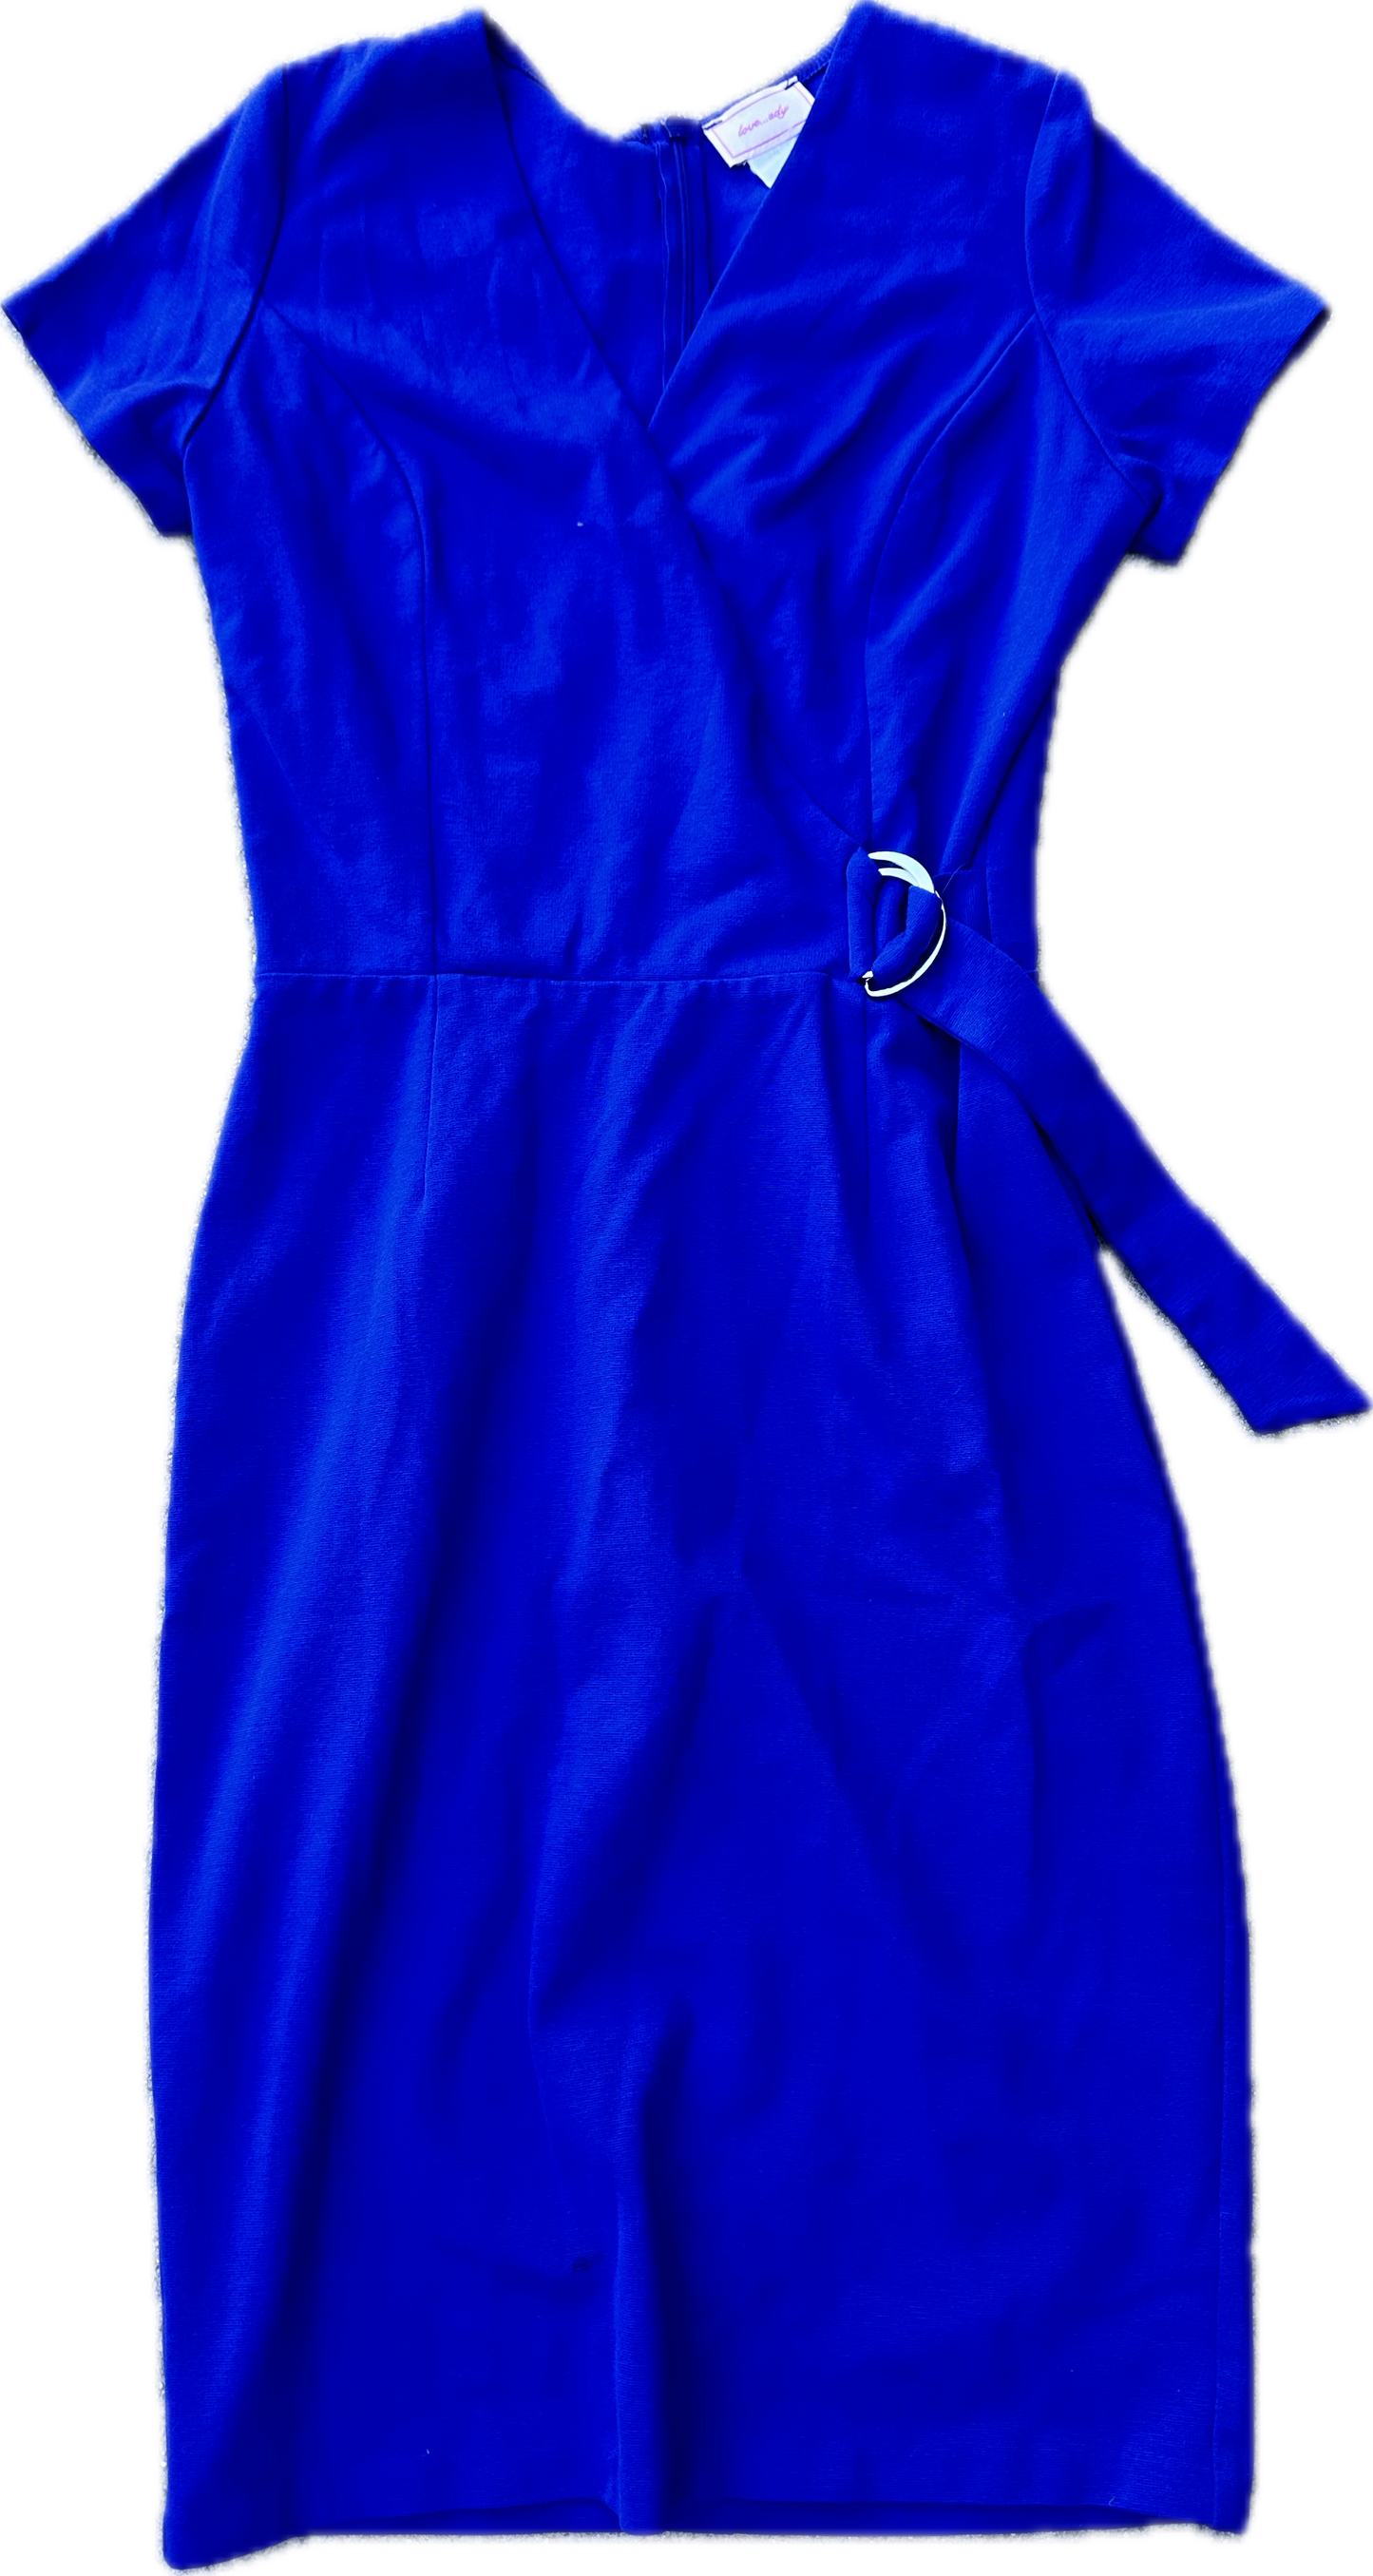 PARKS AND RECREATION: Leslie’s Designer Blue Belt Dress Seen on Screen